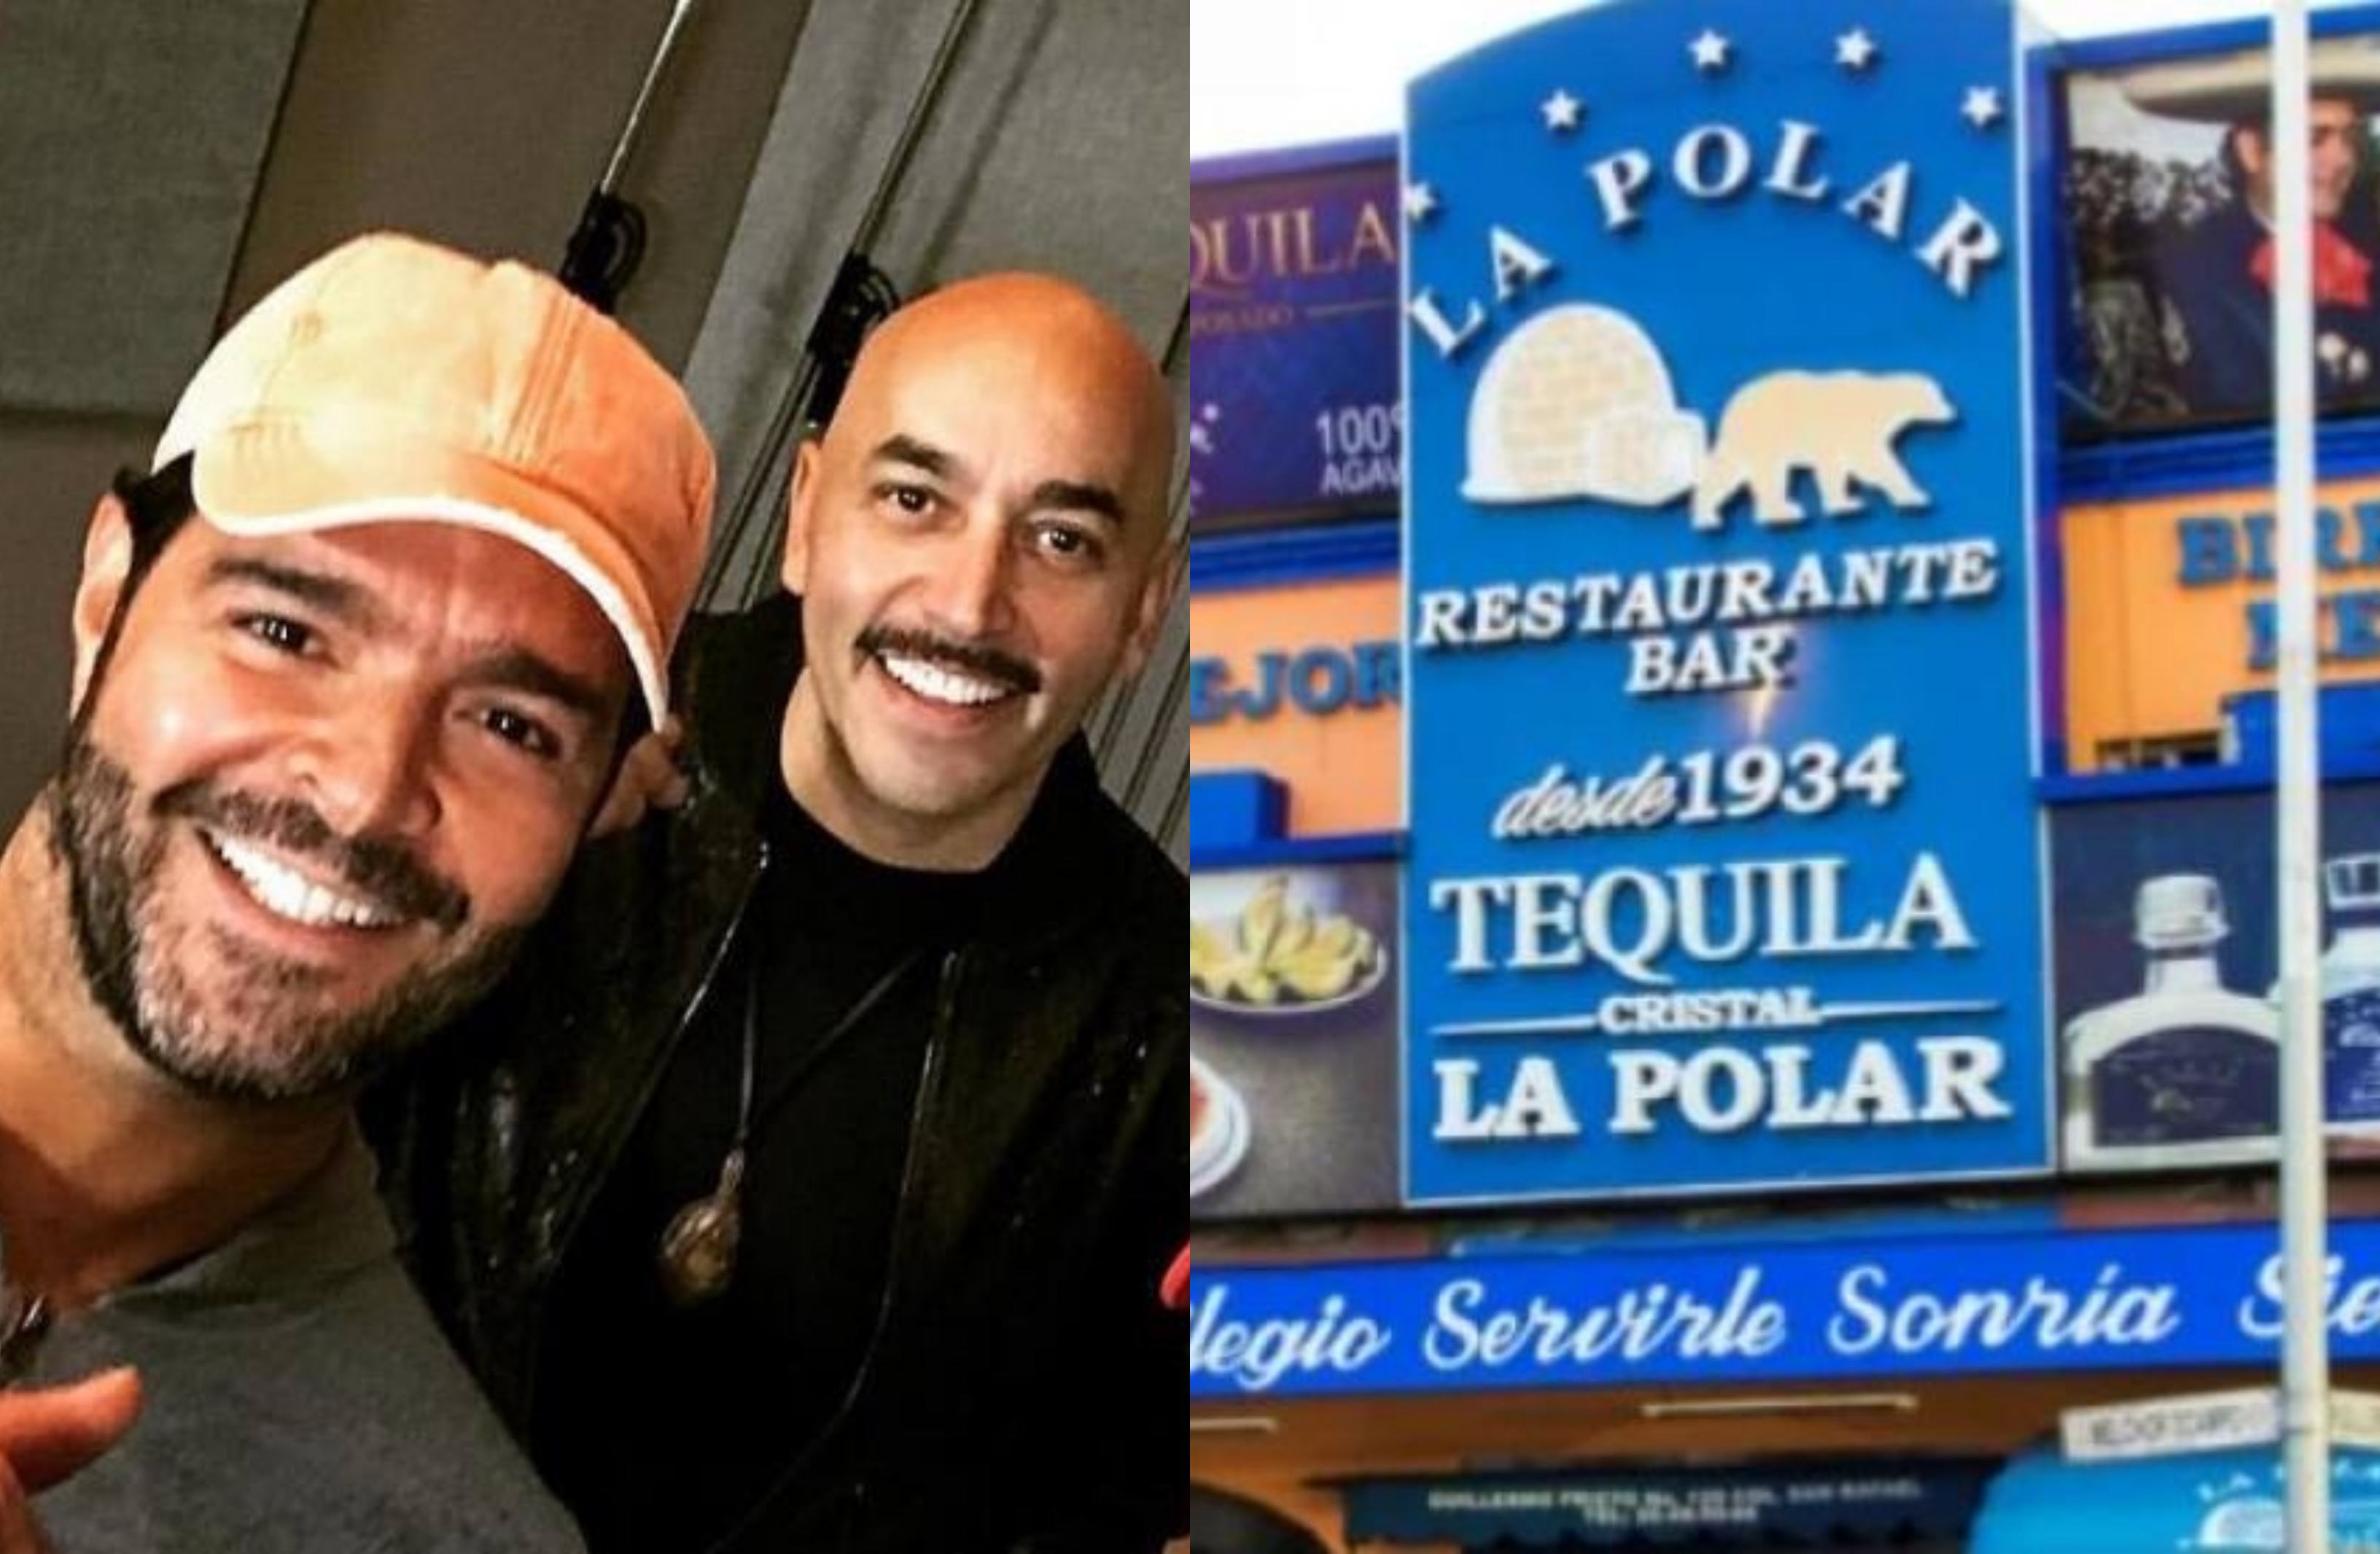 Pablo Montero y Lupillo Rivera se han presentado en La Polar, y además de sus actuaciones han acudido a pasar noches de fiesta como comensales (Foto: Facebook)